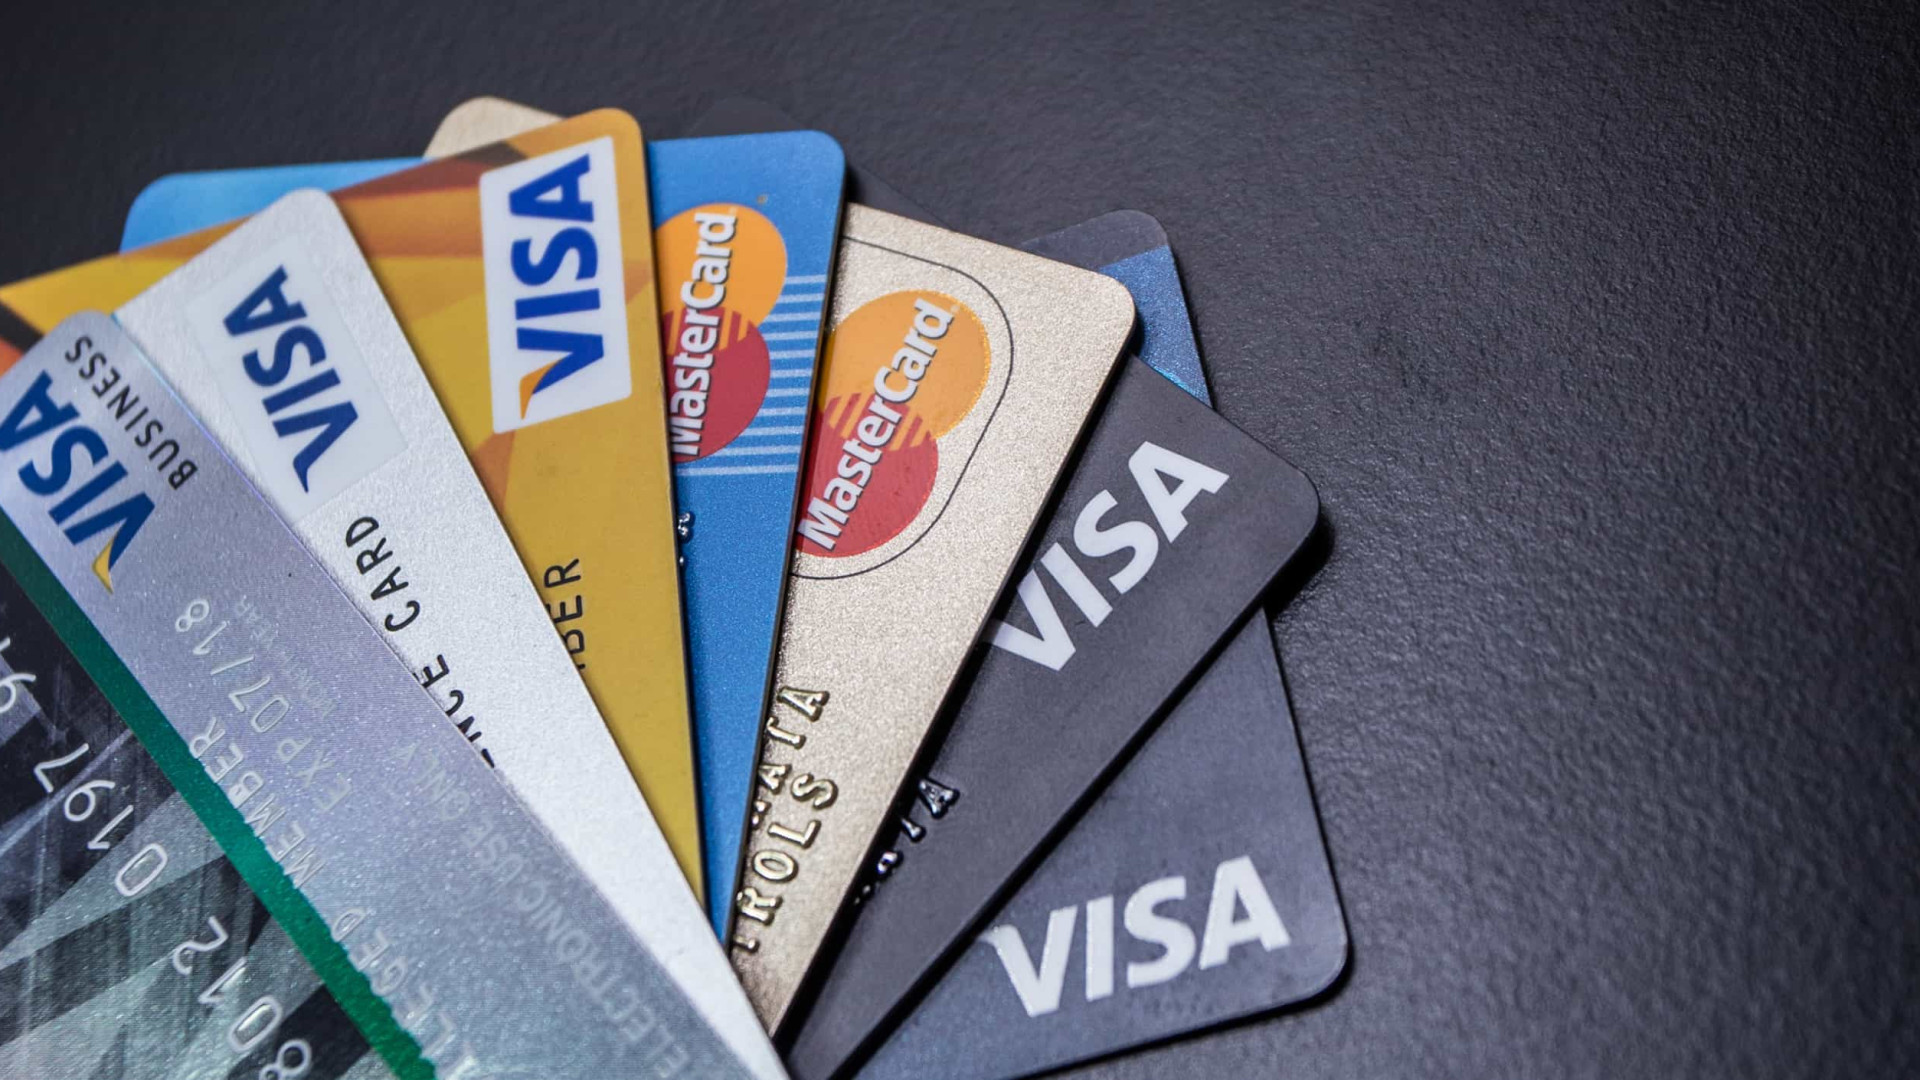 Bancos mudam data de fechamento da fatura do cartão de crédito